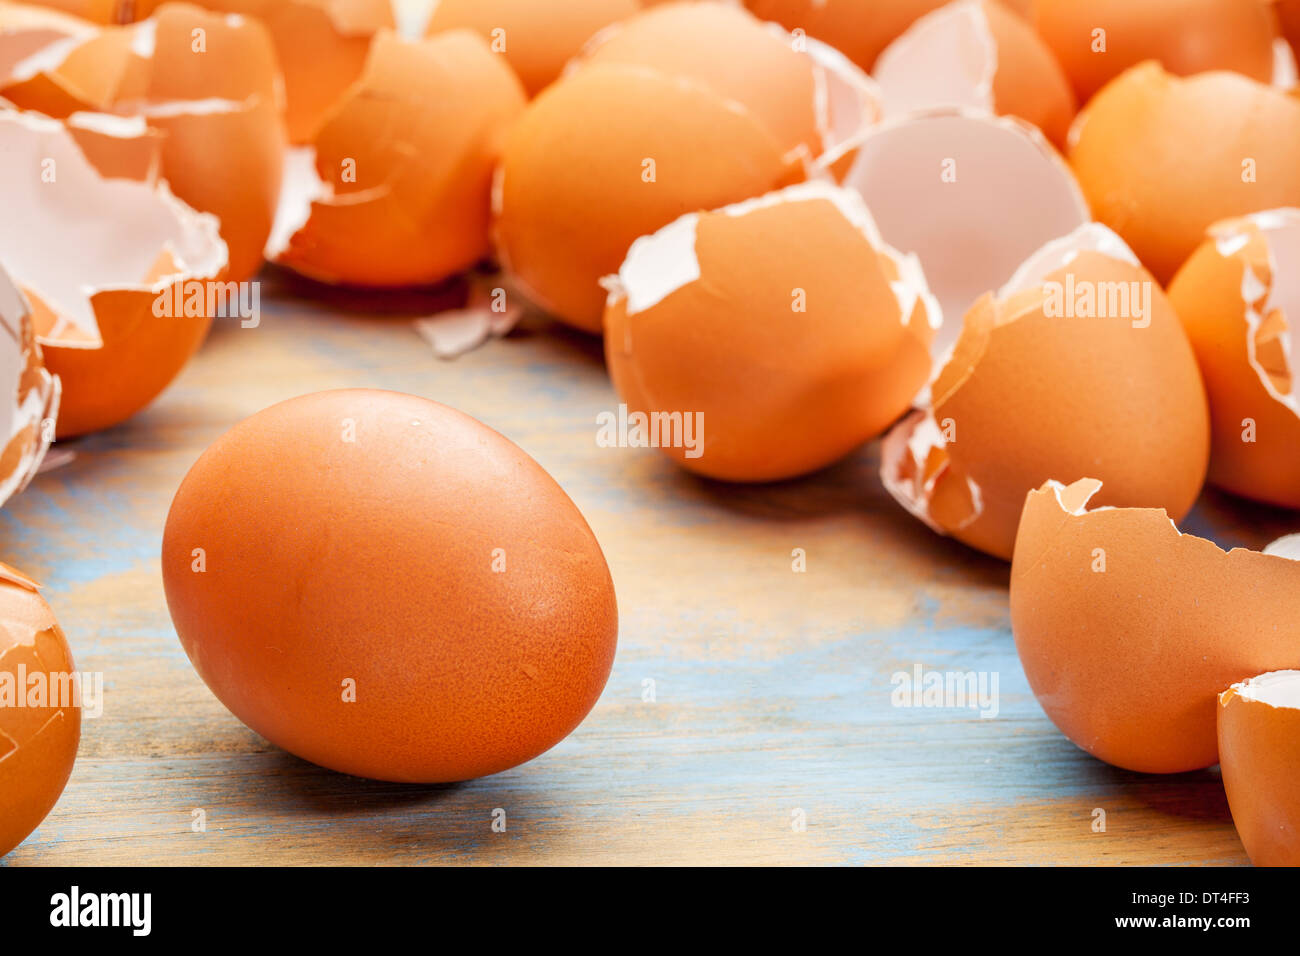 Brown uovo di pollo e vuoto, rotte eggshels su uno sfondo di legno Foto Stock